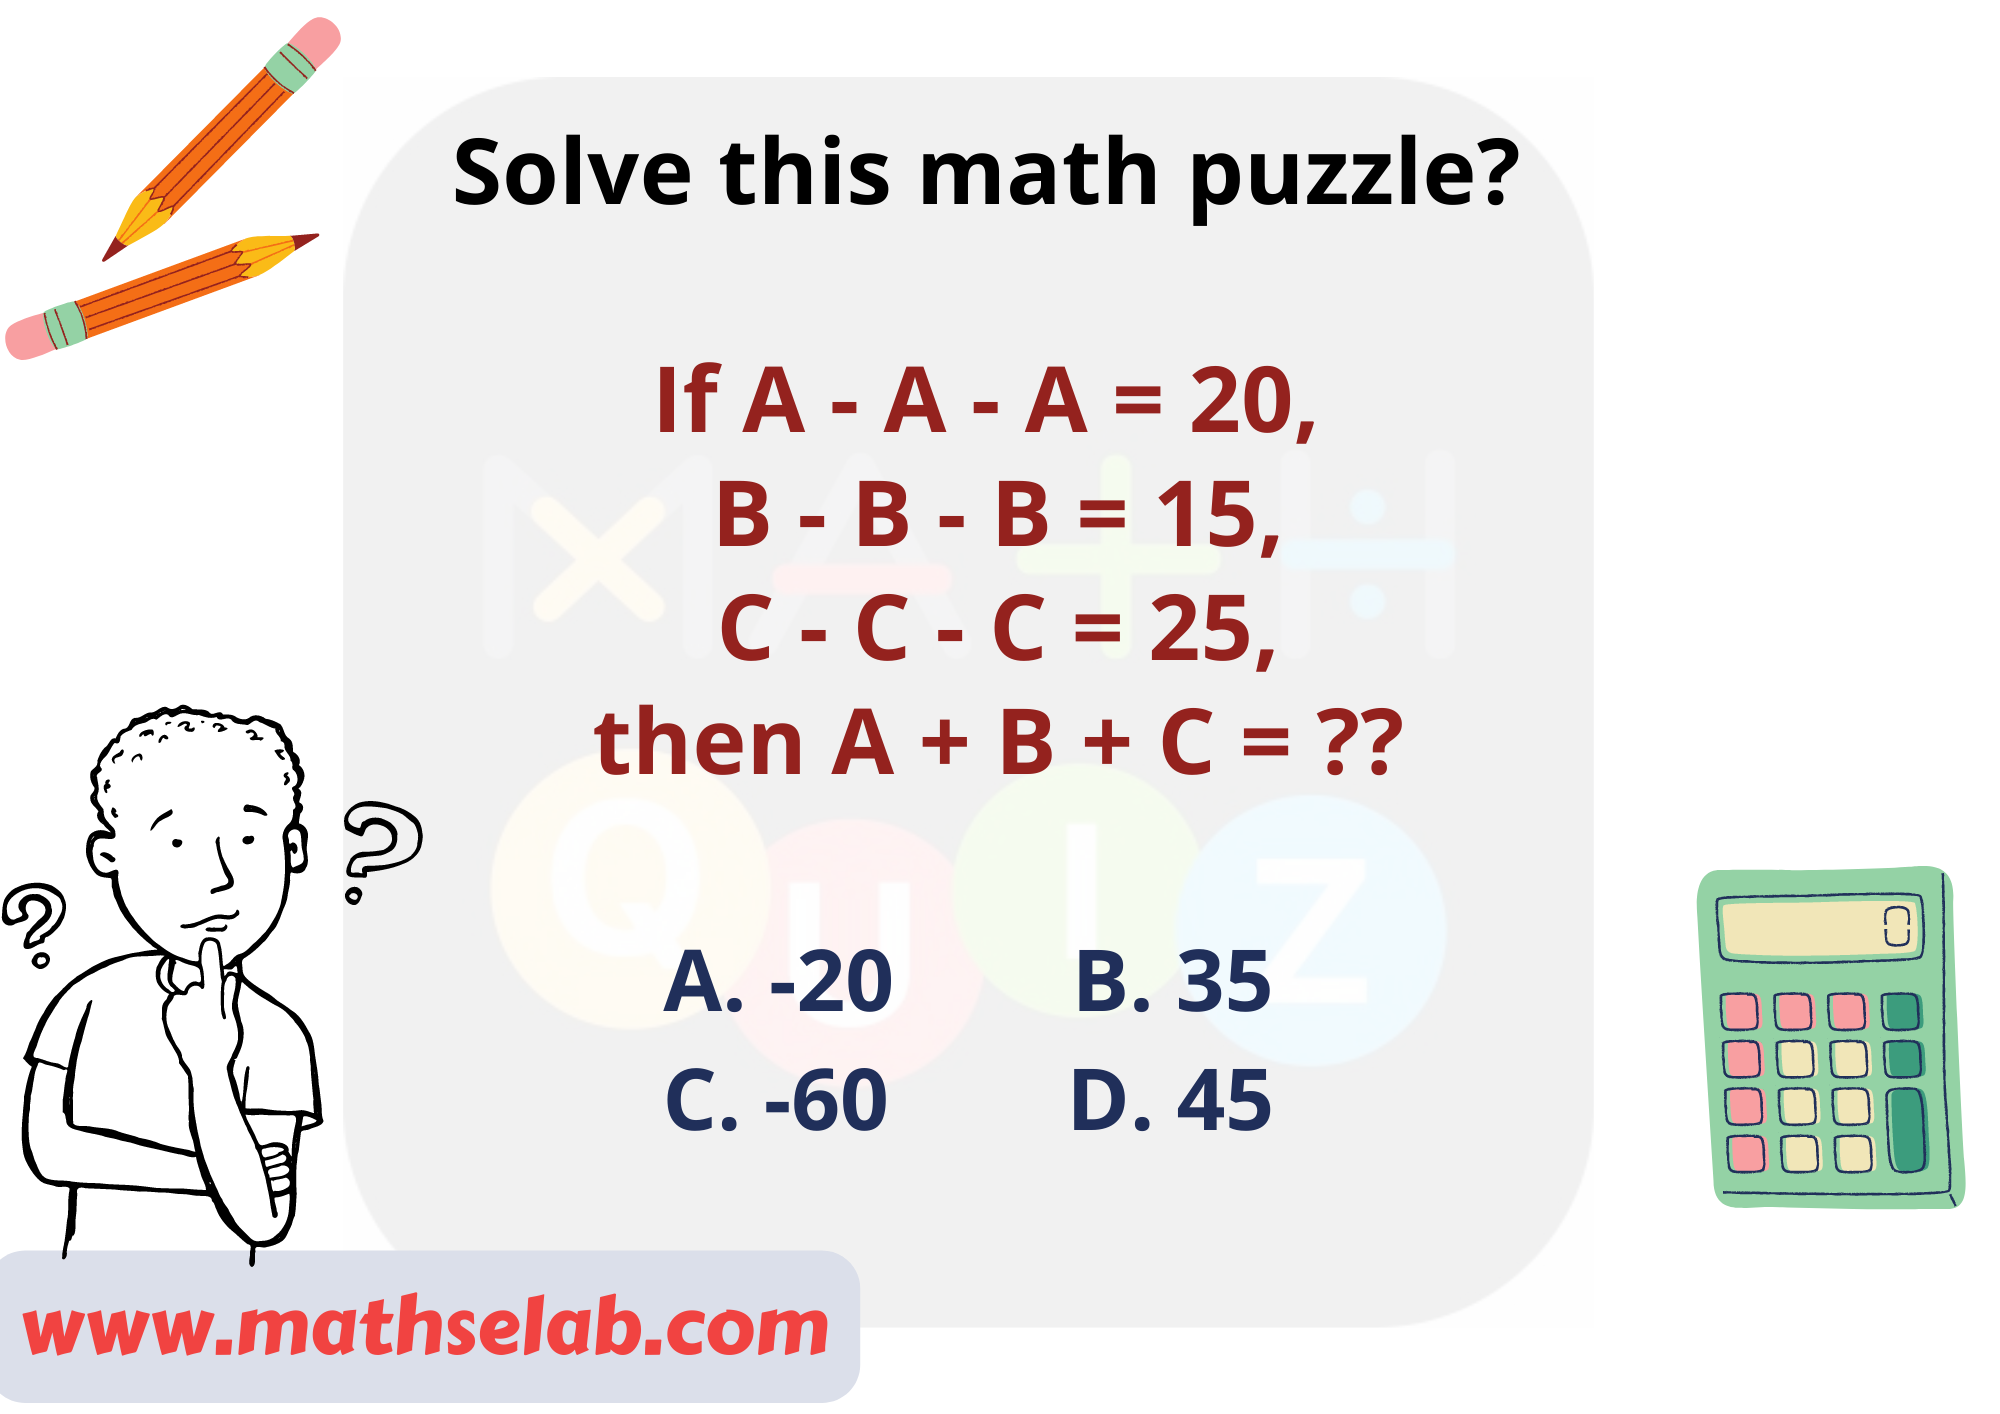 Solve this math puzzle If A - A - A = 20, B - B - B = 15, C - C - C = 25, then A + B + C = - www.mathselab.com